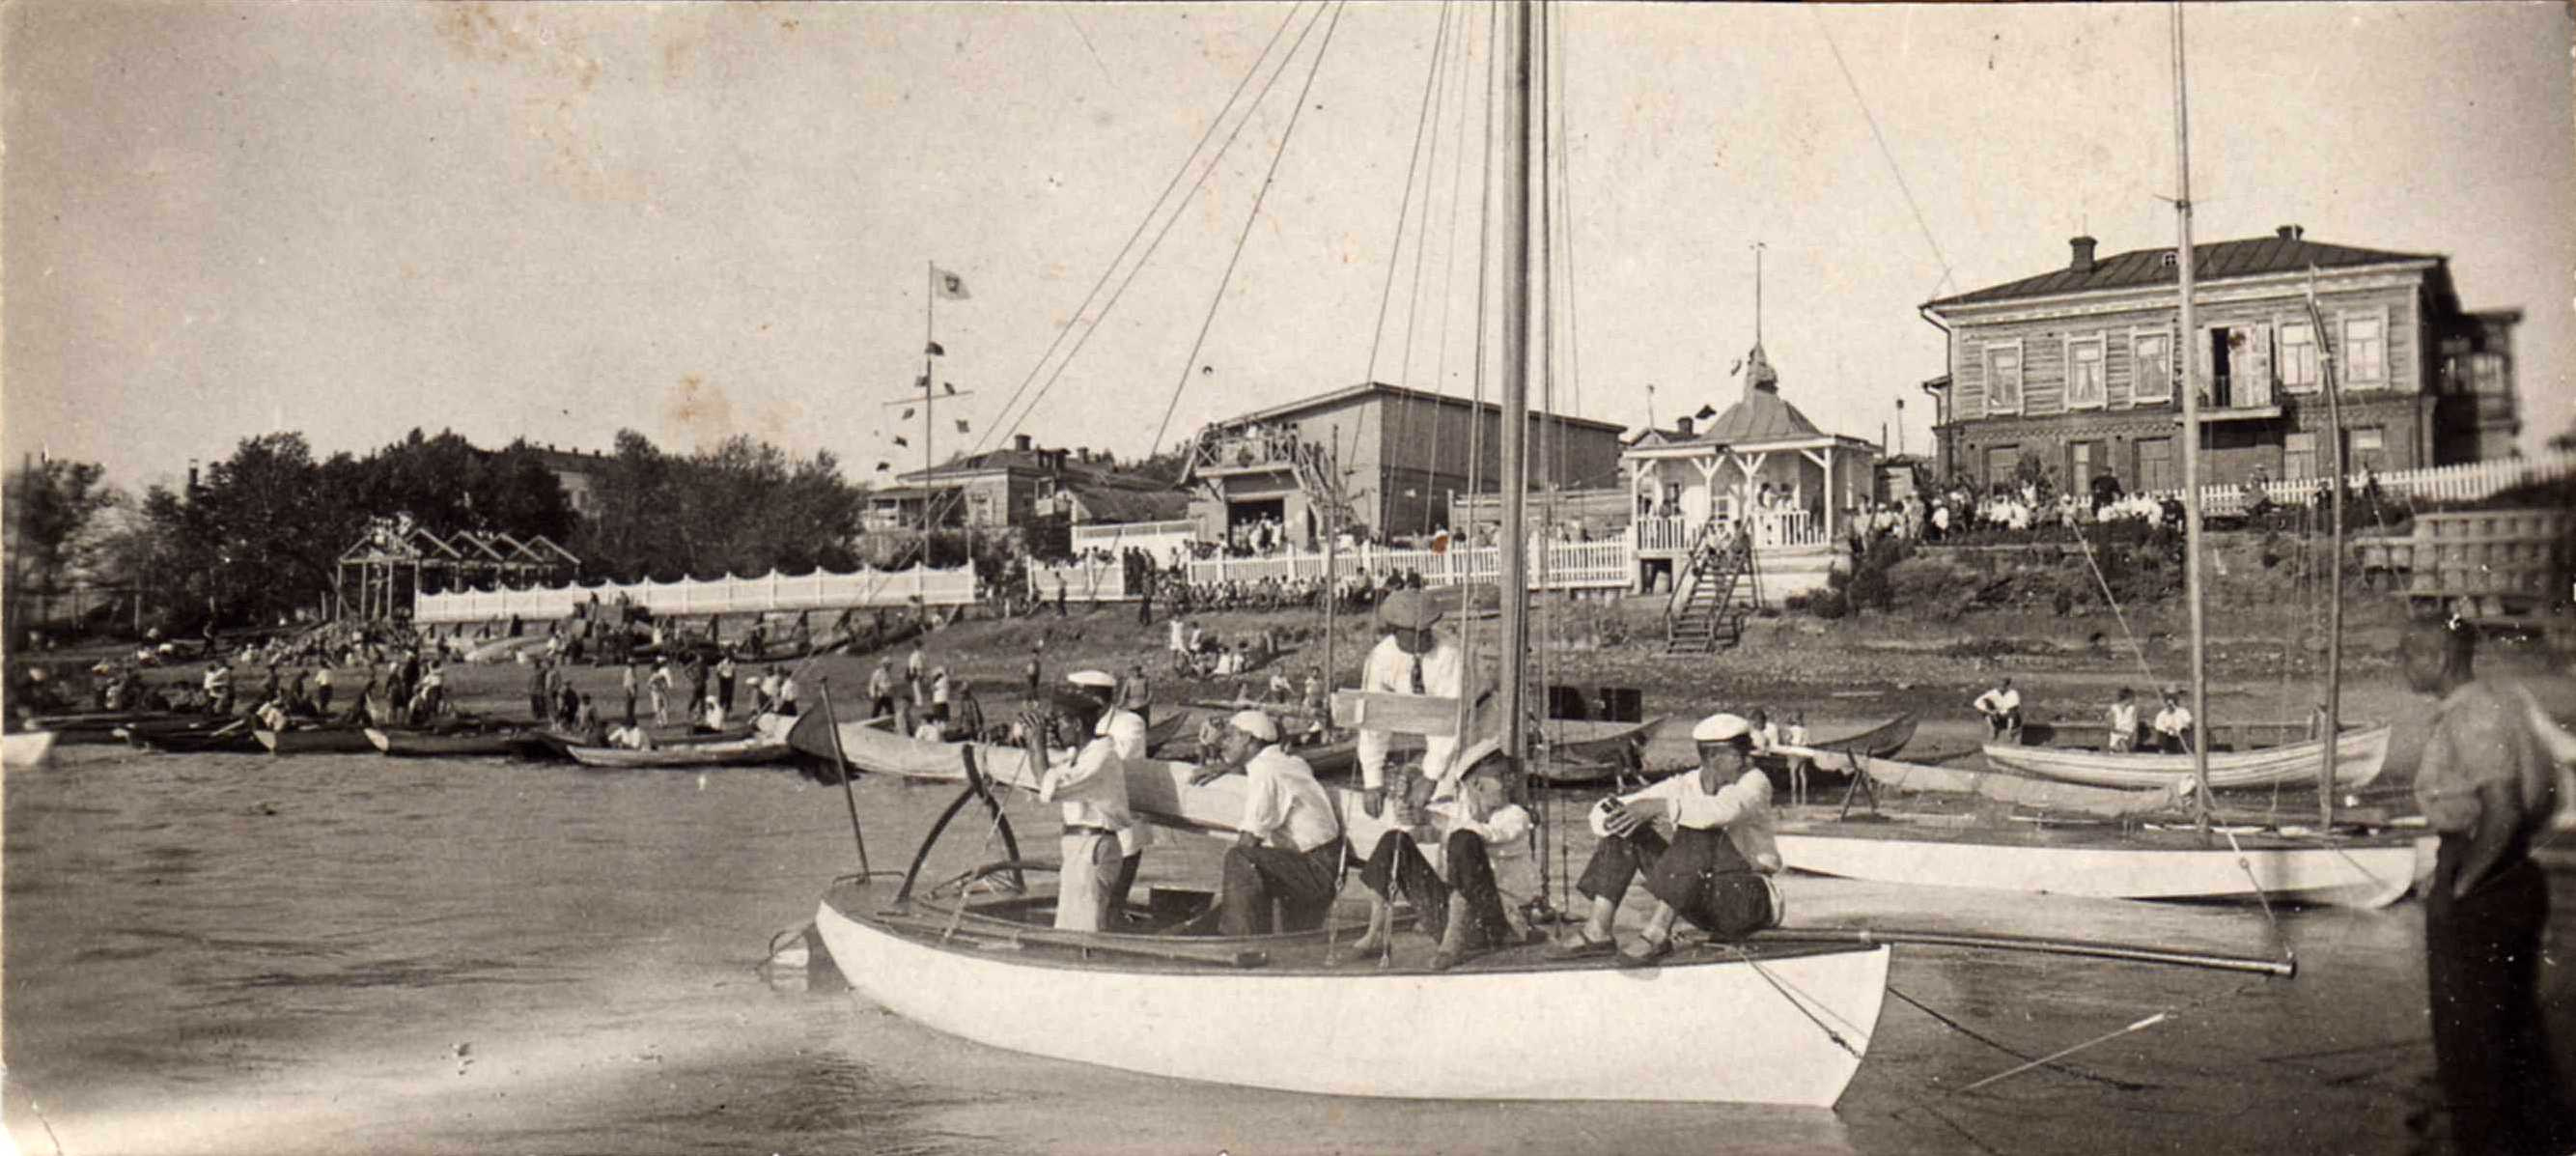 В 1930-м омичи устроили гонки на яхтах возле будущего пляжа «Центральный-2» (в советские годы его называли Куйбышевским). На воде прохладно, да и в белых рубашках не жарко